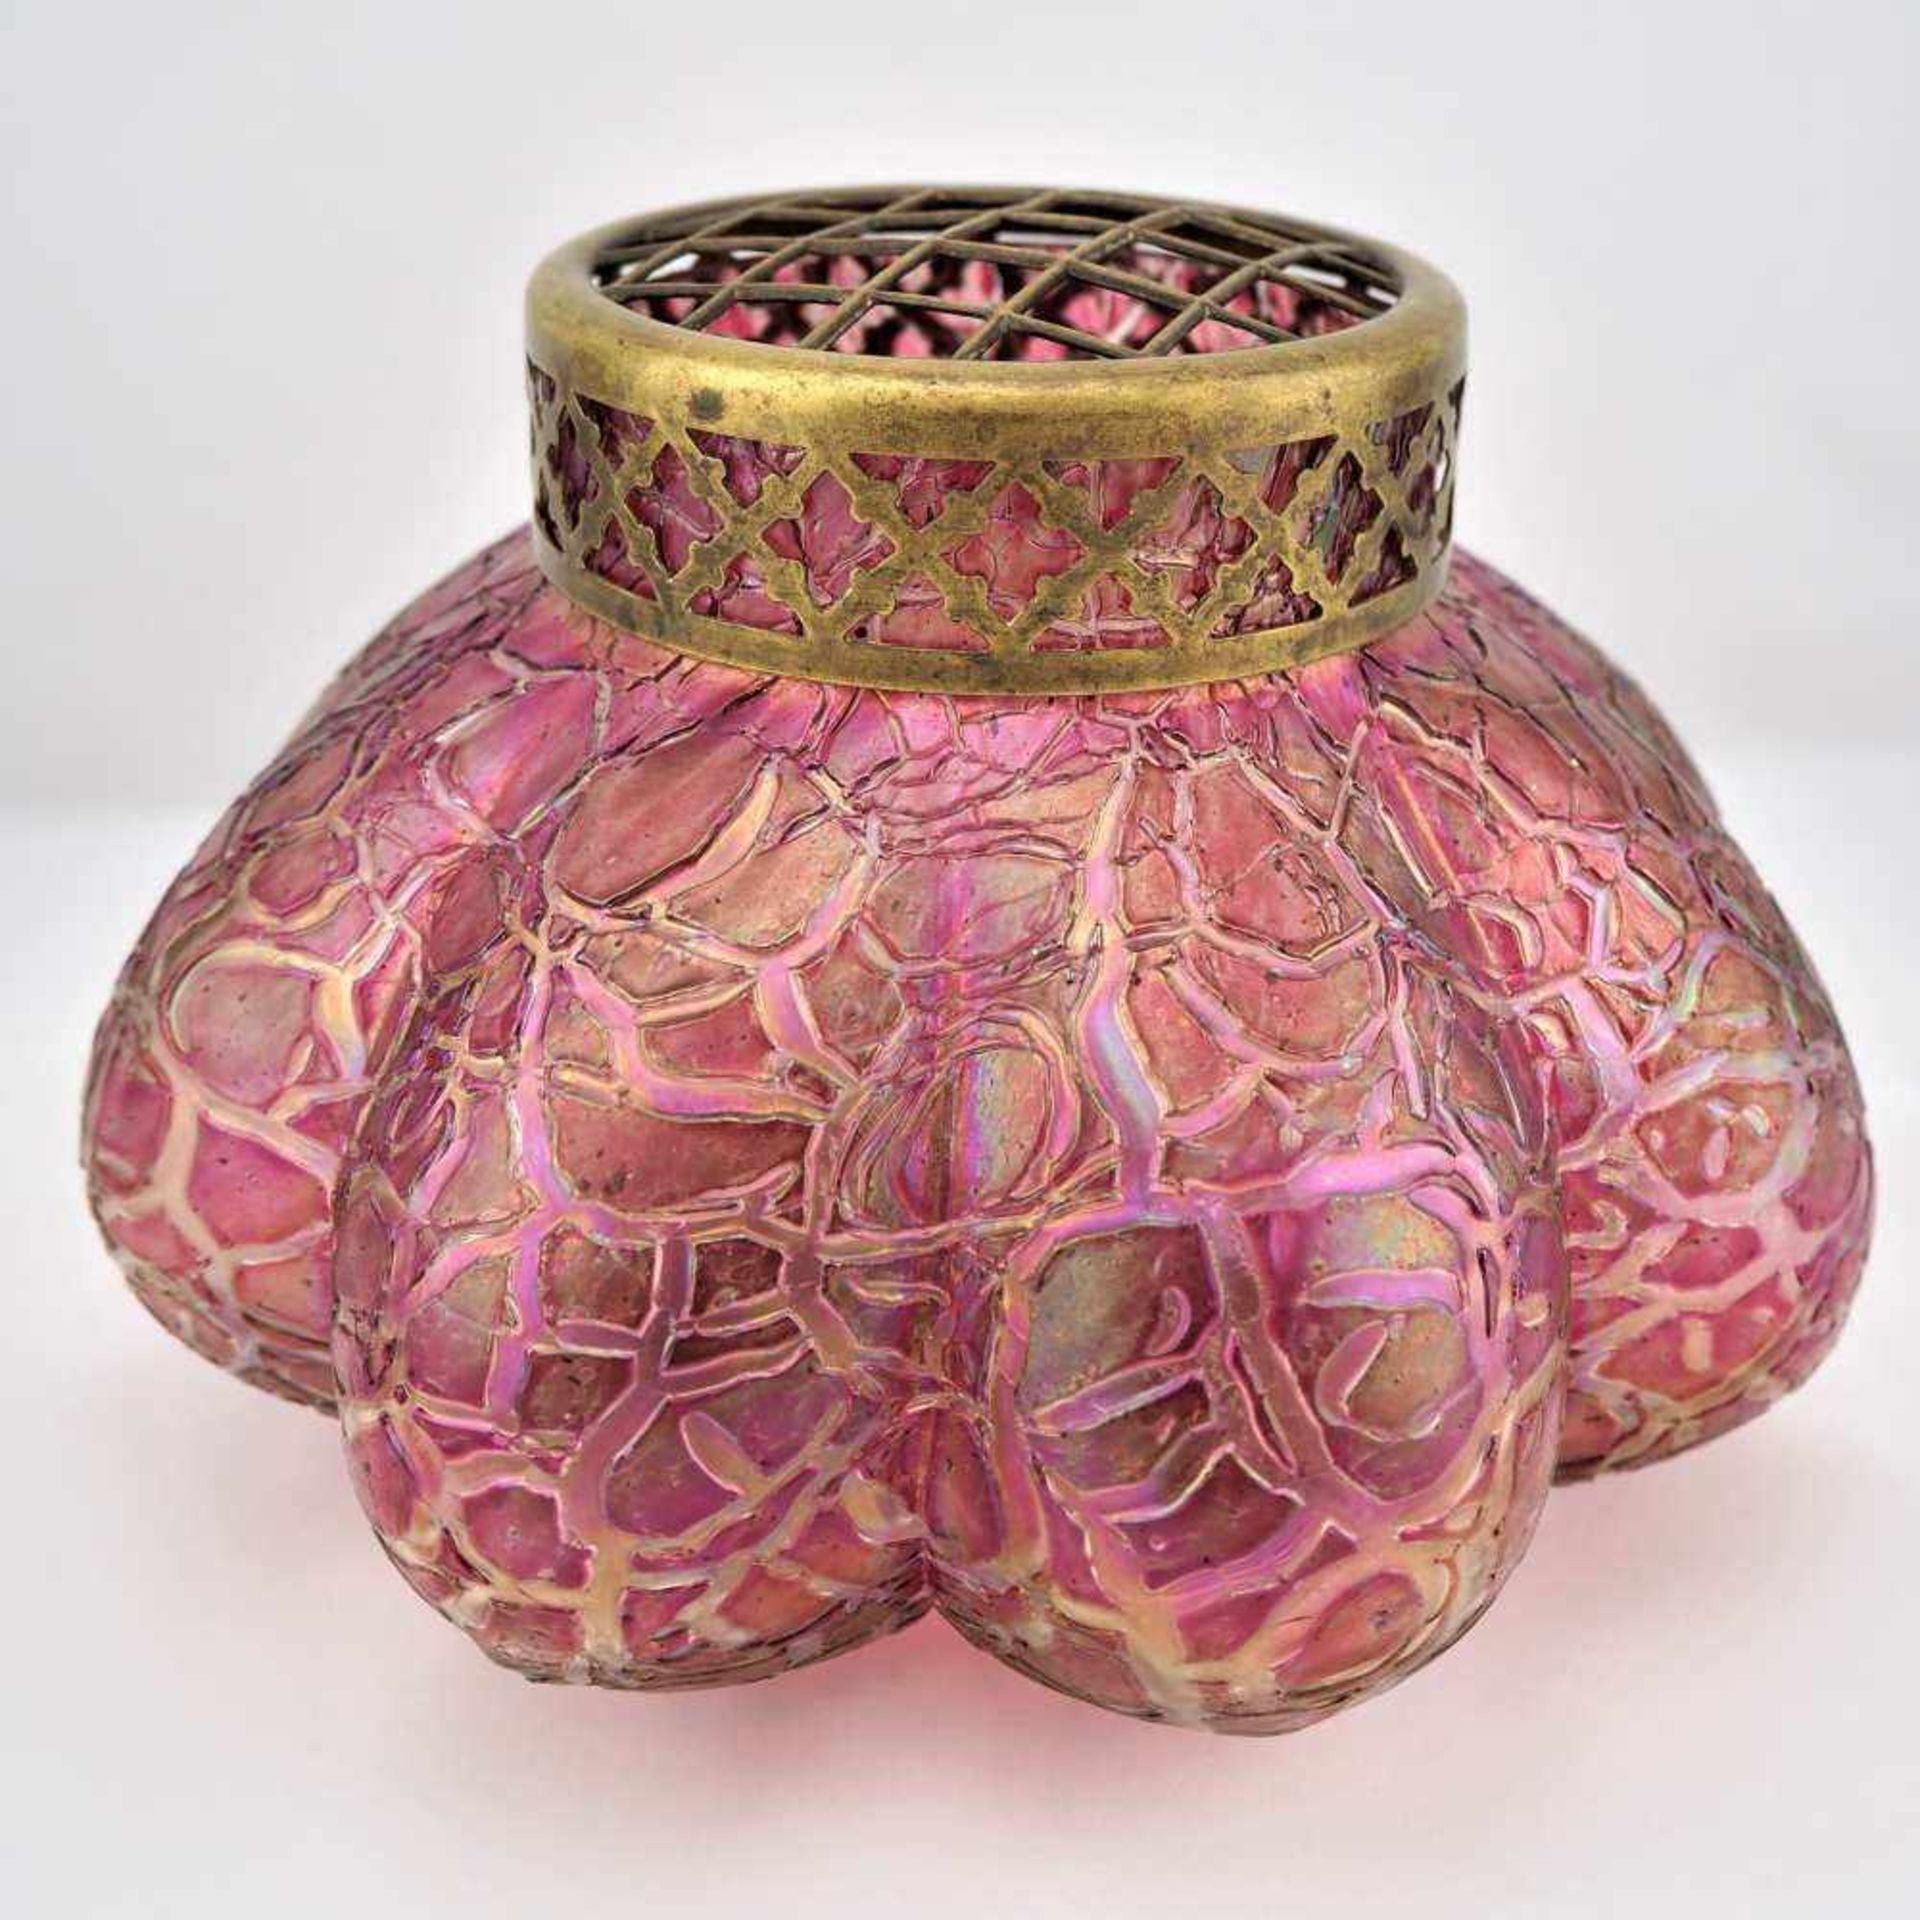 Große Vase in Kürbisform, wohl LoetzGlas farbig und irisierend mit Relief-Musterung und Messing